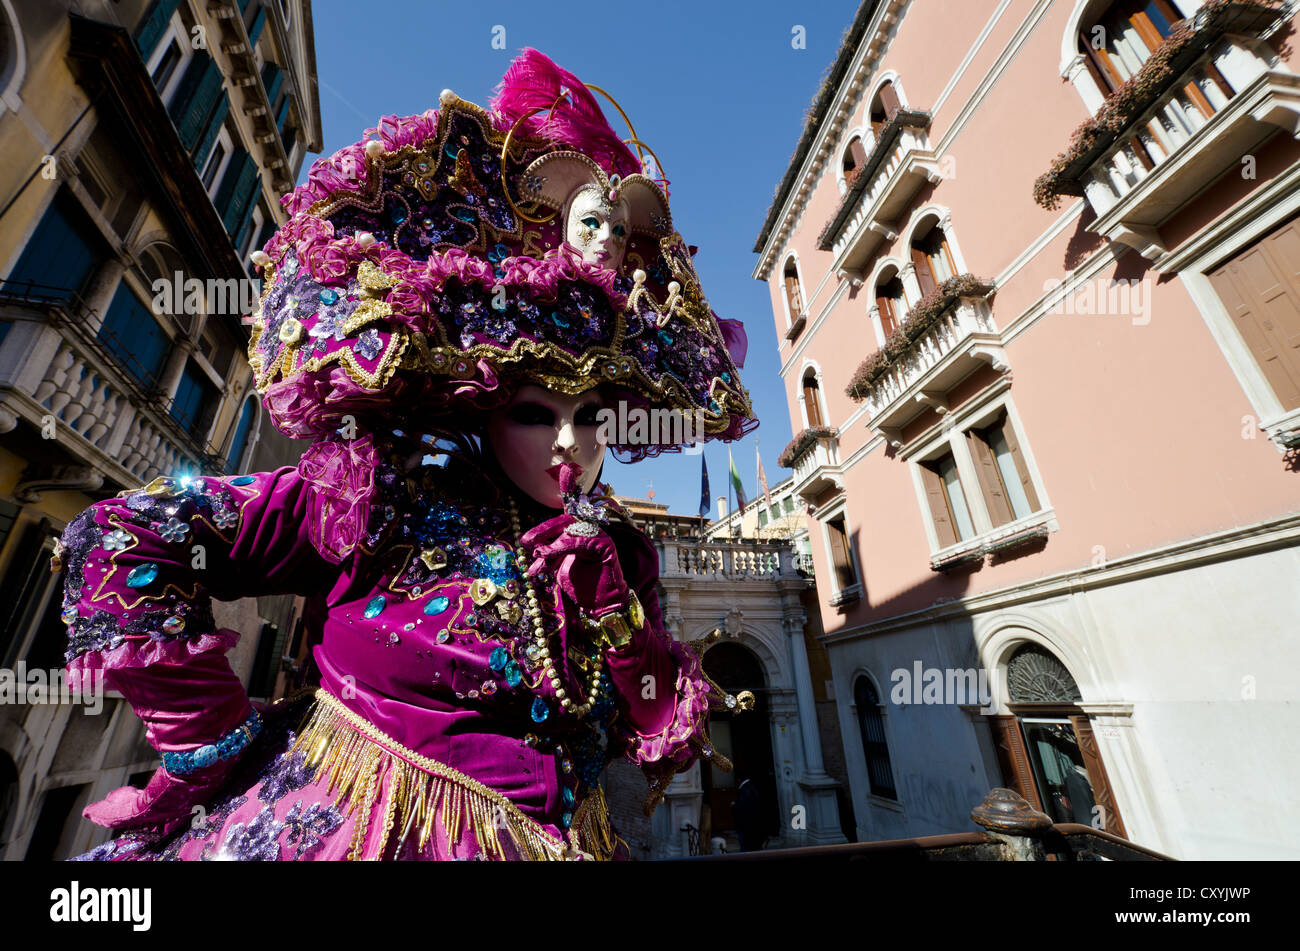 Venetian mask, Carnevale, carnival in Venice, Veneto, Italy, Europe Stock Photo